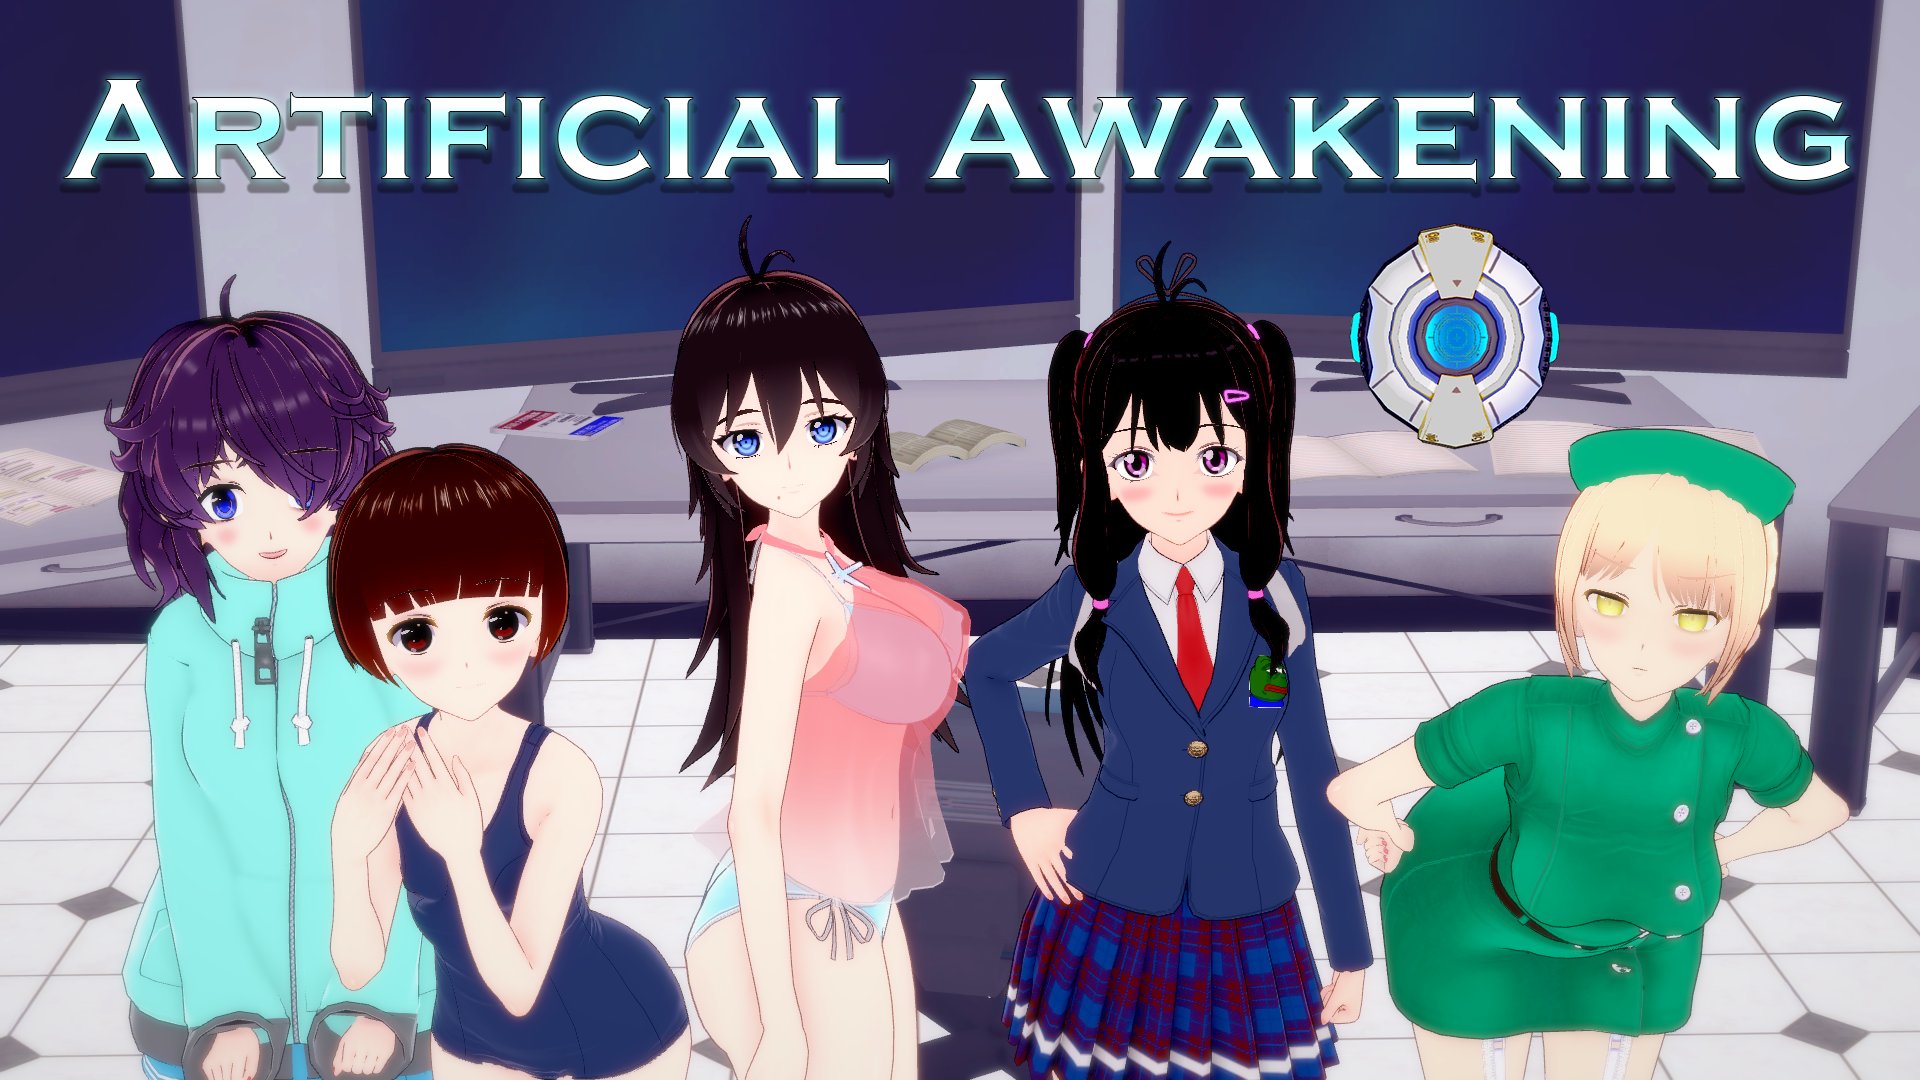 artificial awakening poster.png